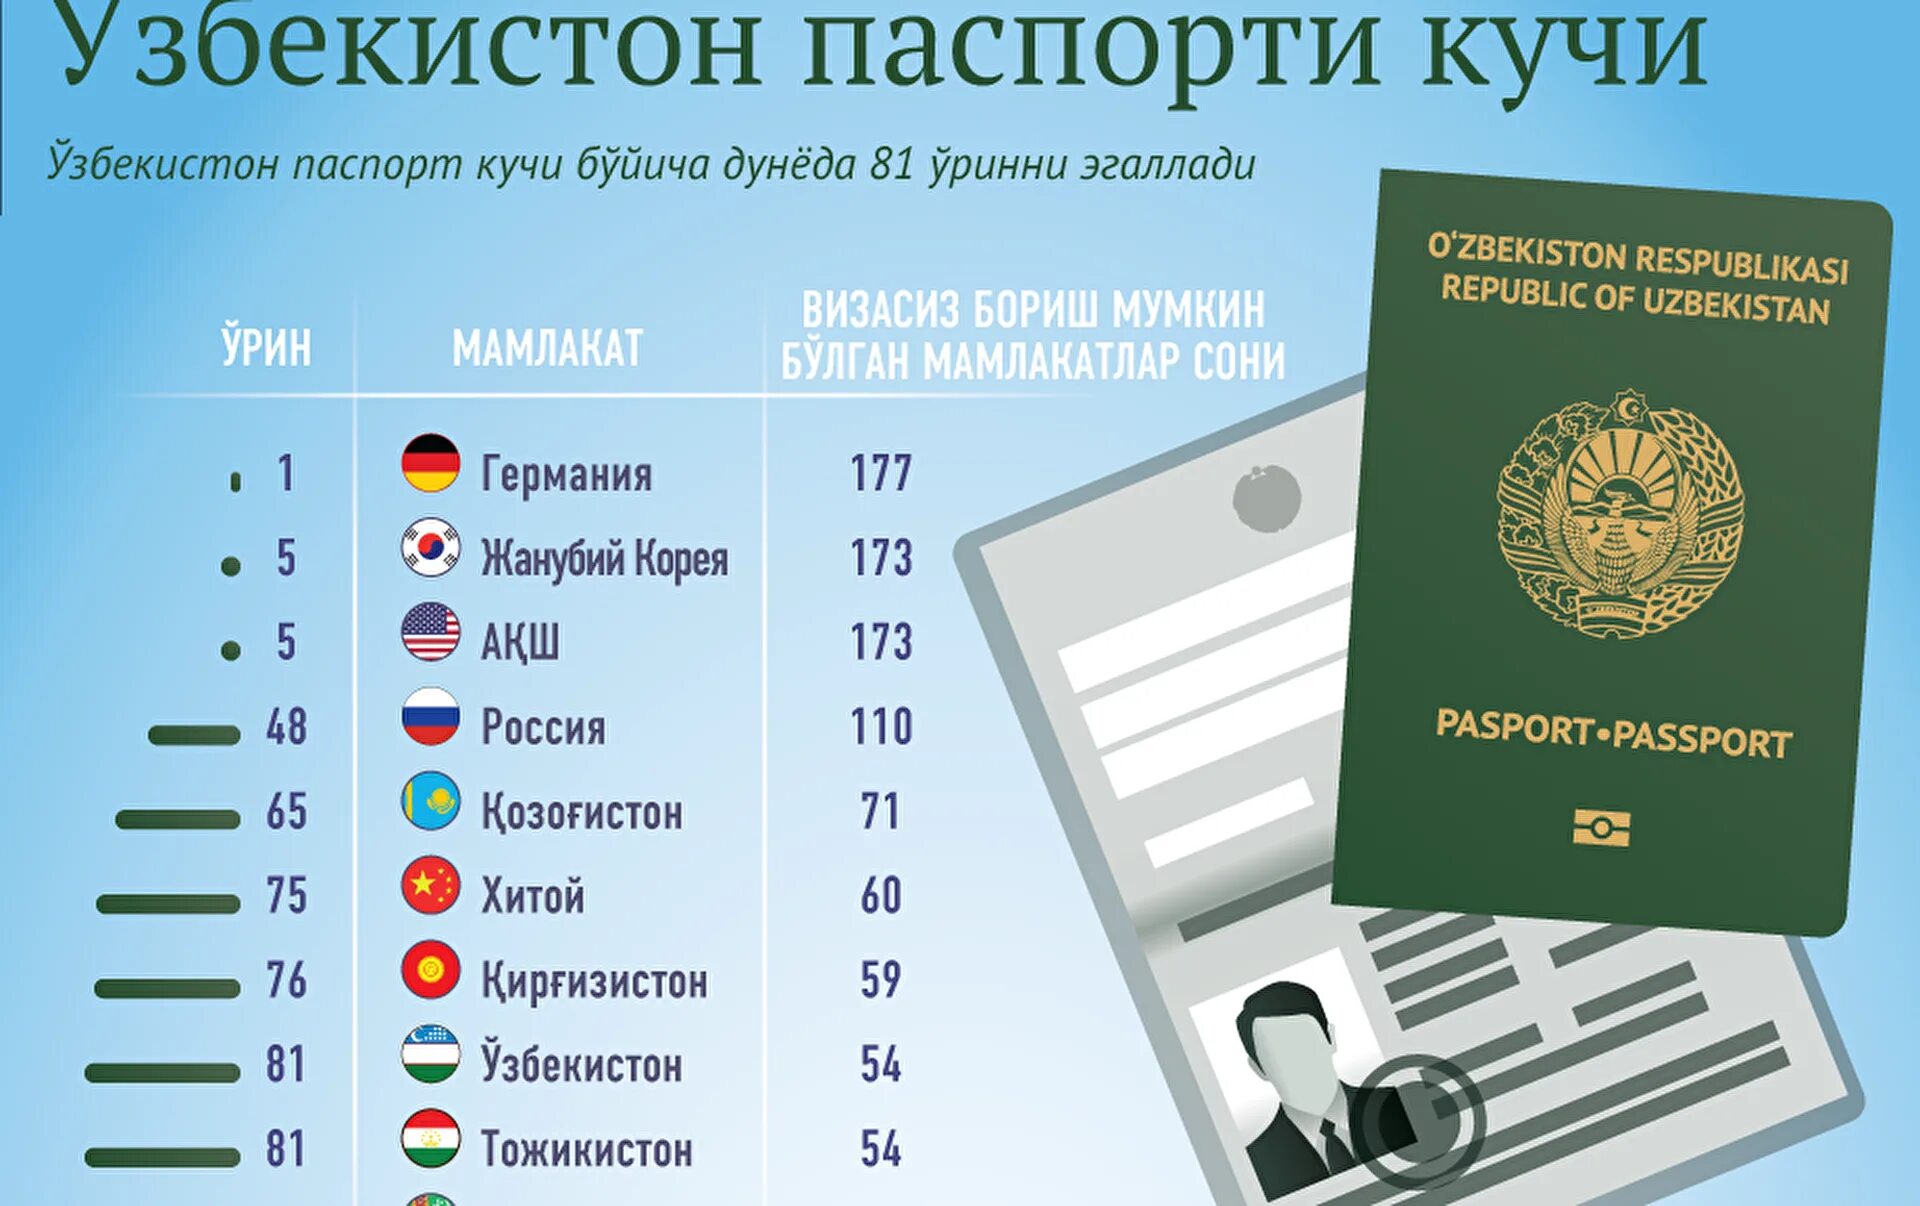 Виза для граждан Узбекистана. Безвизовые страны для граждан Узбекистана. Визовые требования для граждан Узбекистана. В казахстан можно без визы